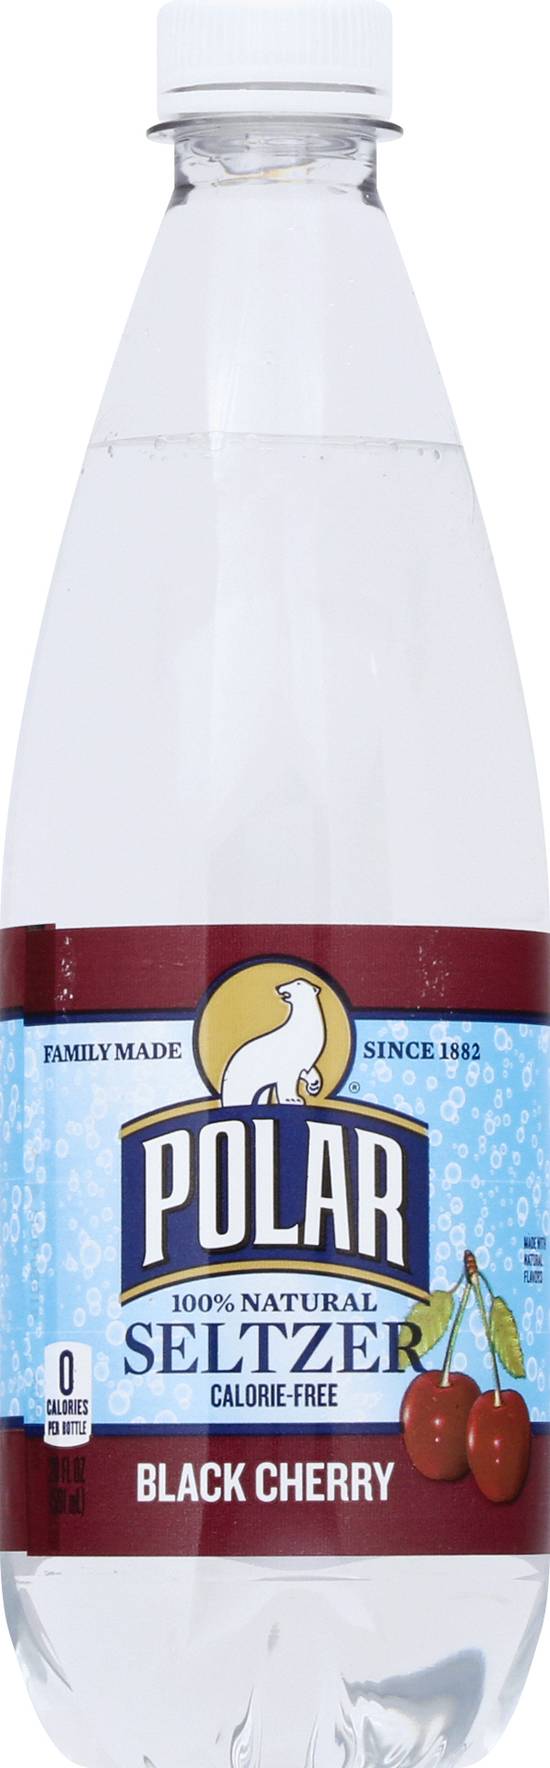 Polar Black Cherry Seltzer (20 fl oz)